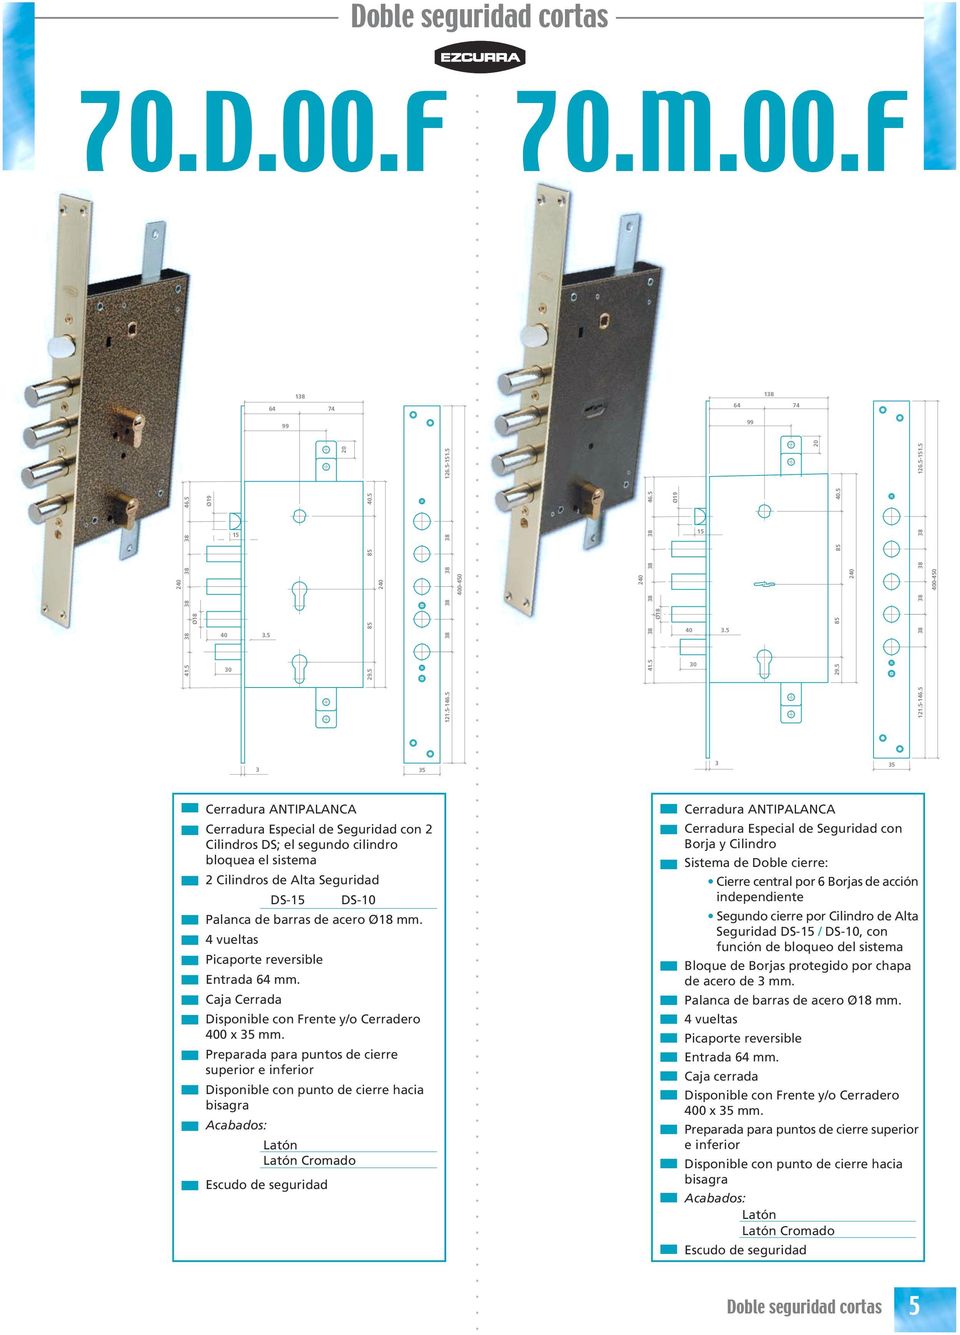 5 400-450 5 5 Cerradura Especial de Seguridad con 2 Cilindros DS; el segundo cilindro bloquea el sistema 2 Cilindros de Alta Seguridad DS- DS-10 Palanca de barras de acero mm.